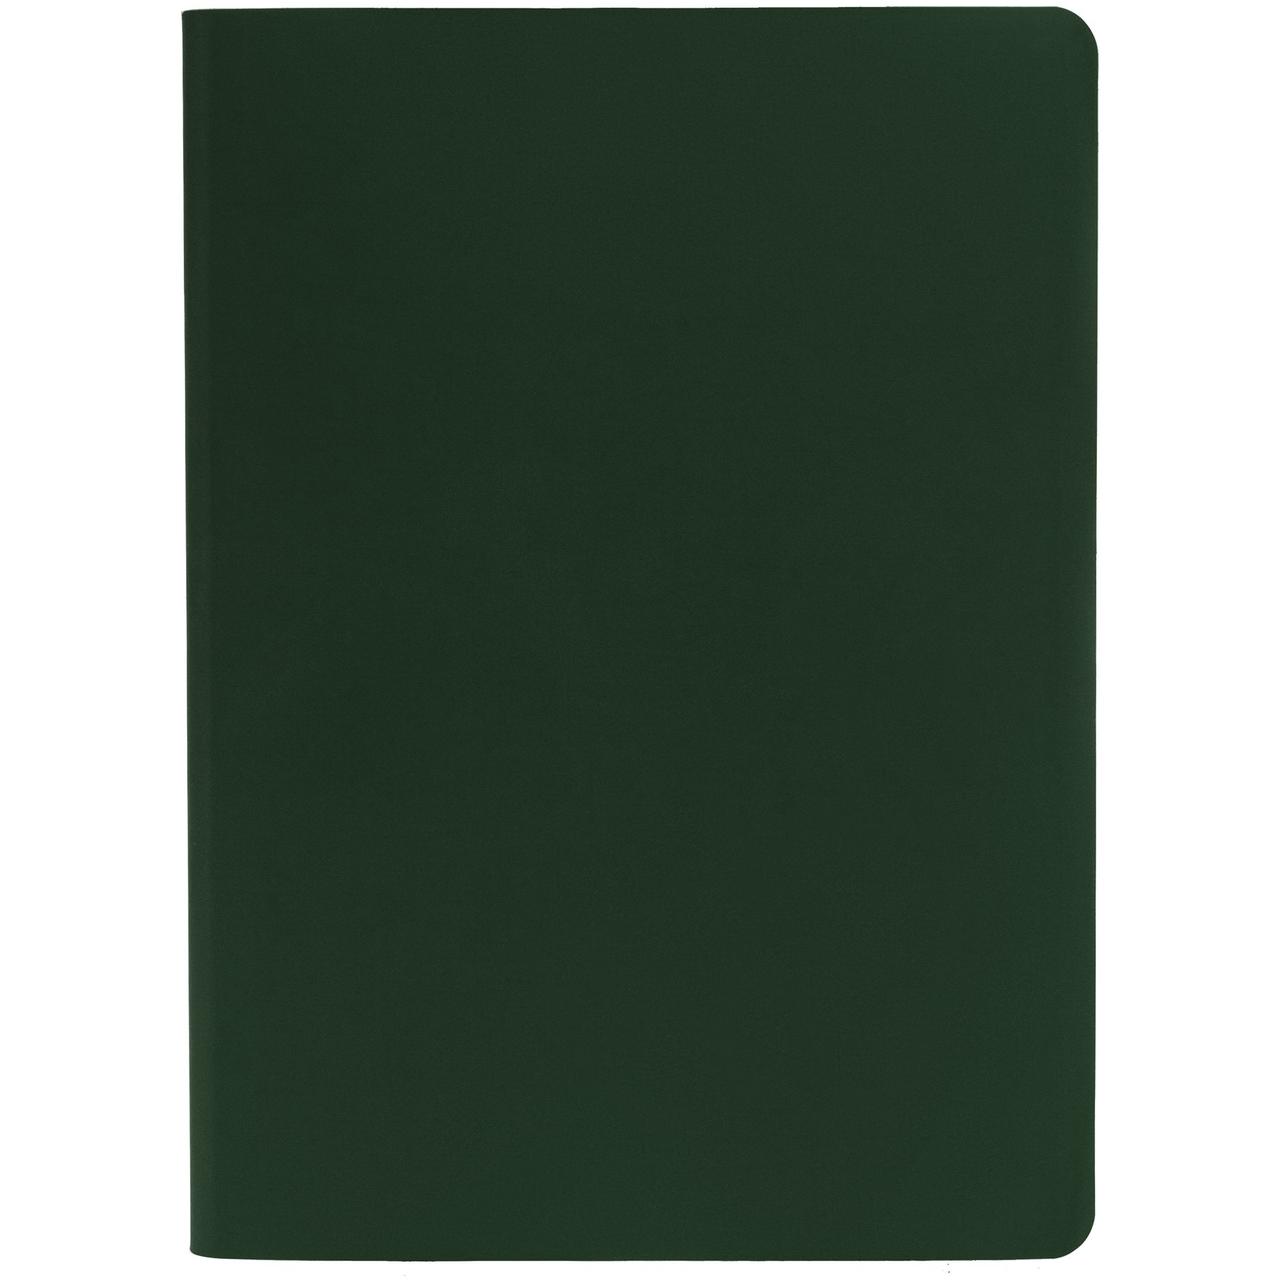 Ежедневник Flex Shall датированный, зеленый (артикул 17881.99), фото 1